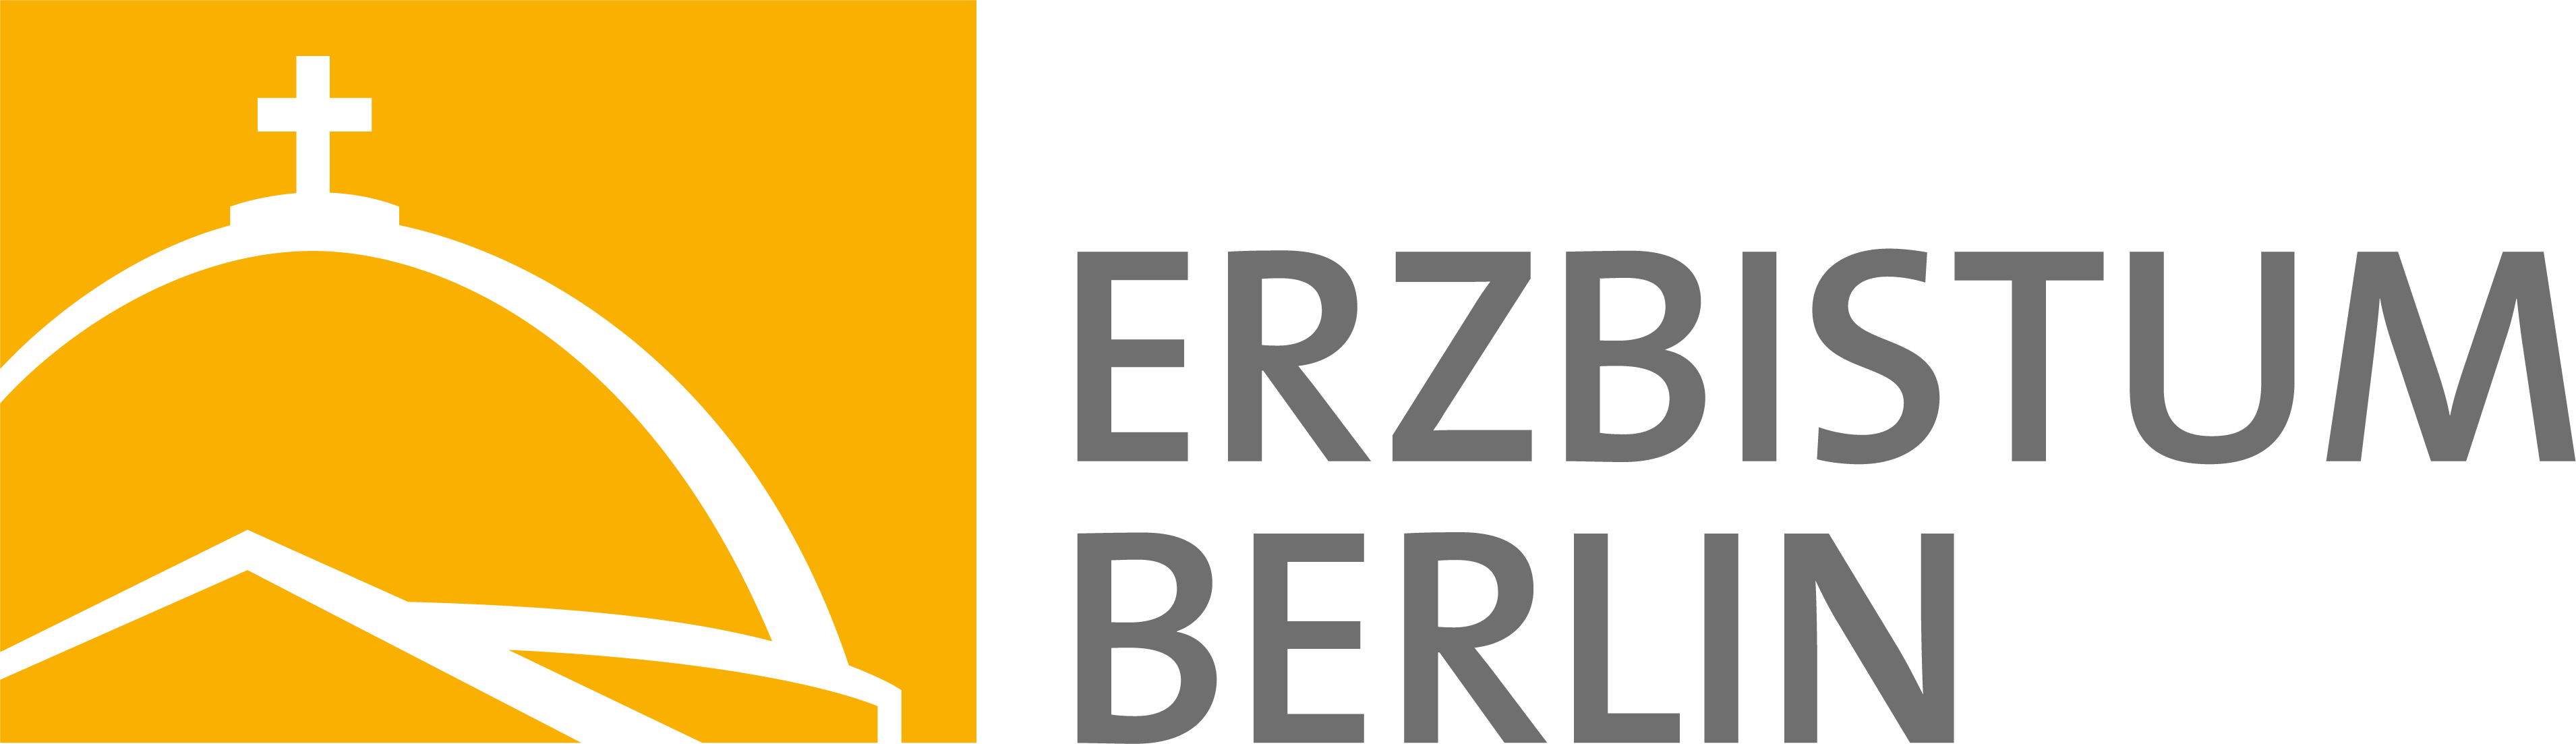 Erzbistum Berlin (Logo)